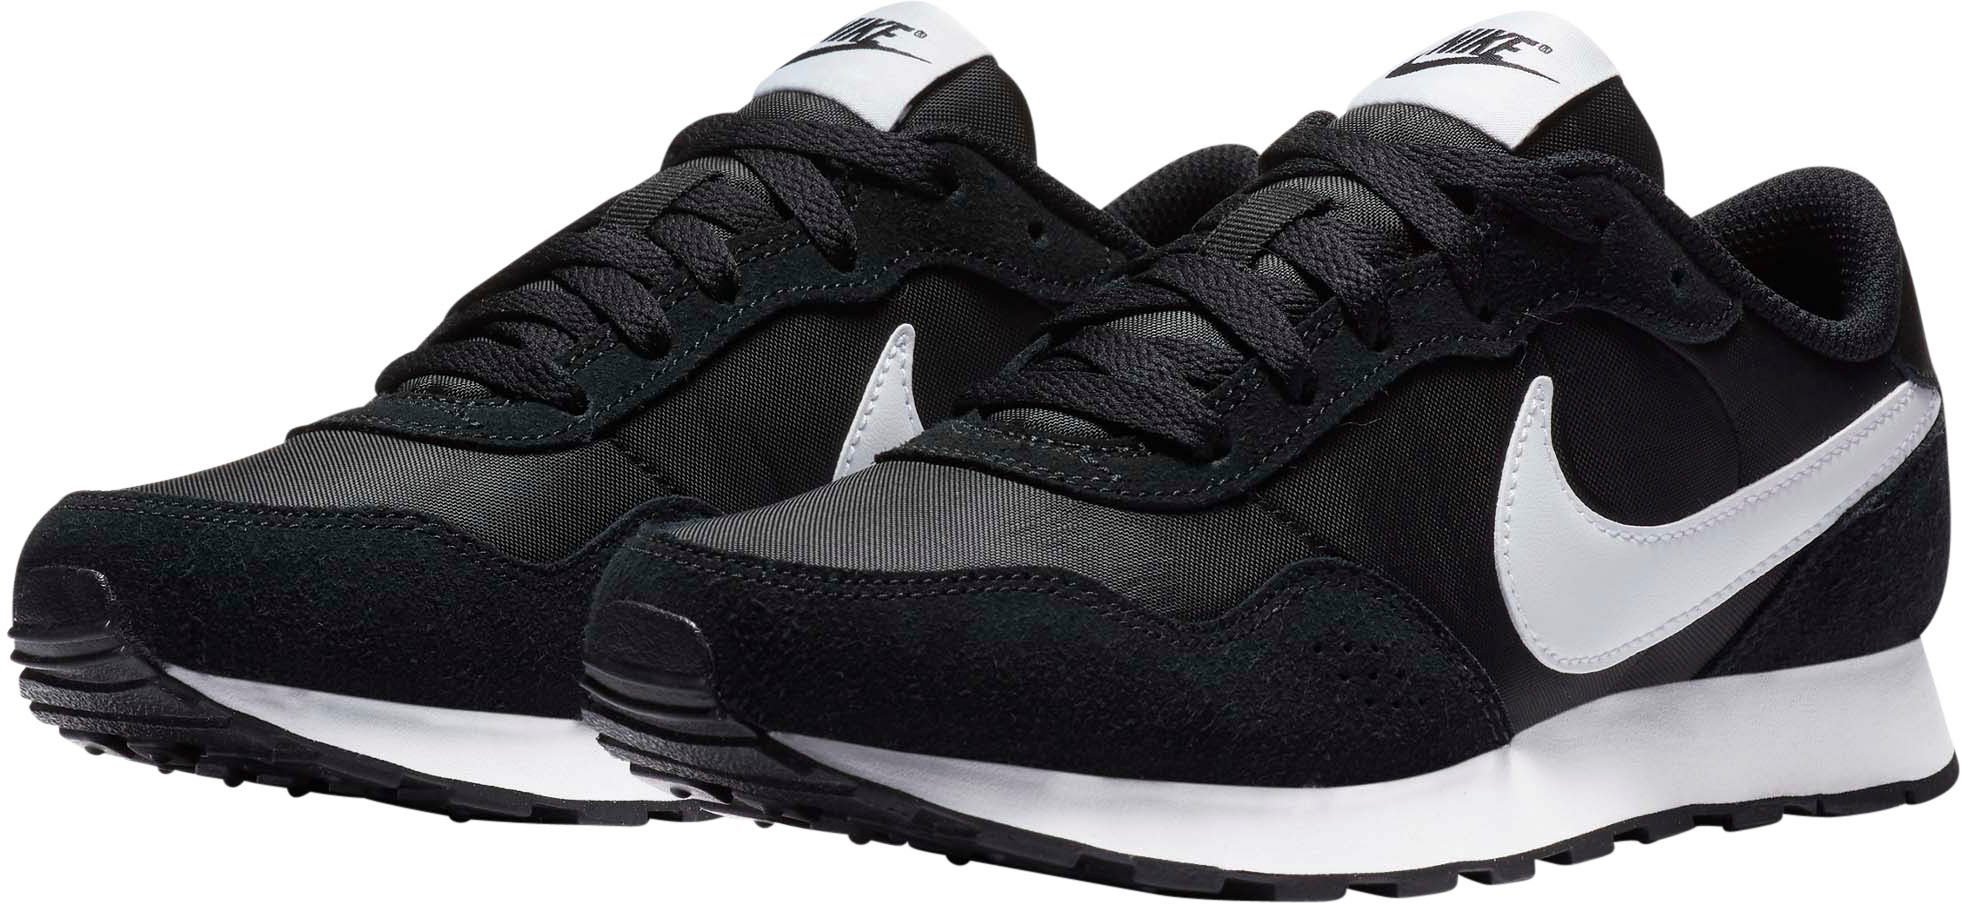 Schwarze Nike Schuhe online kaufen | OTTO